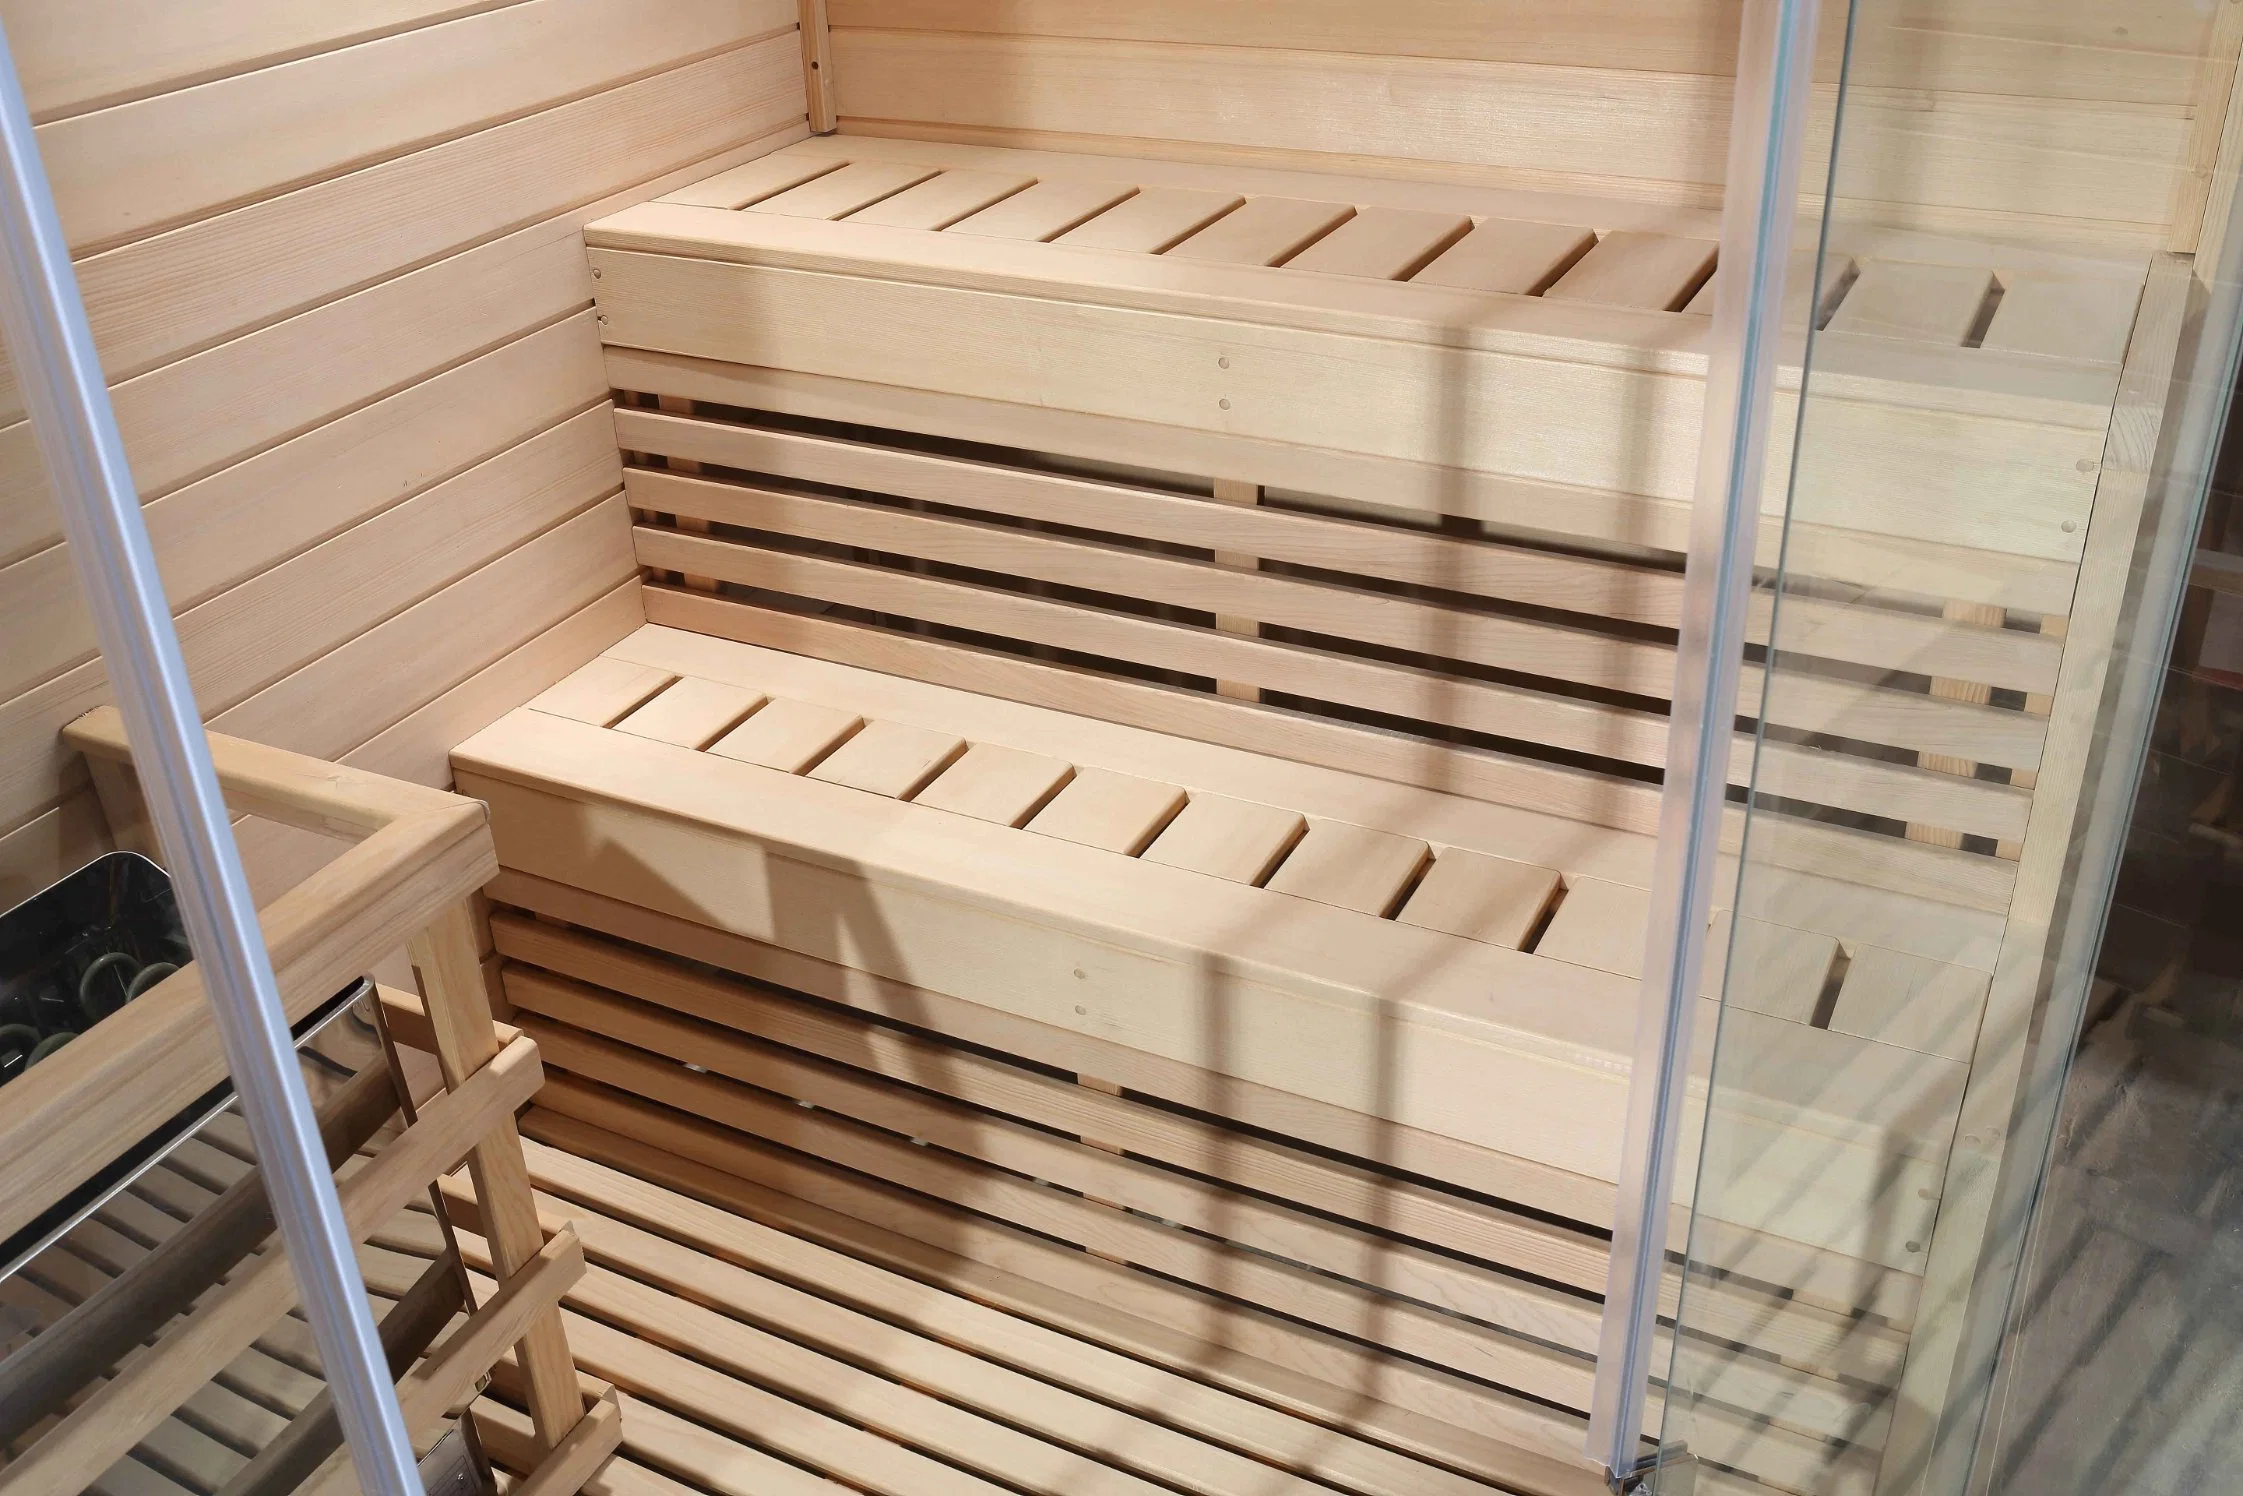 Vente directe du fabricant - Utilisation domestique - Sauna infrarouge sec et hammam pour 2 personnes.